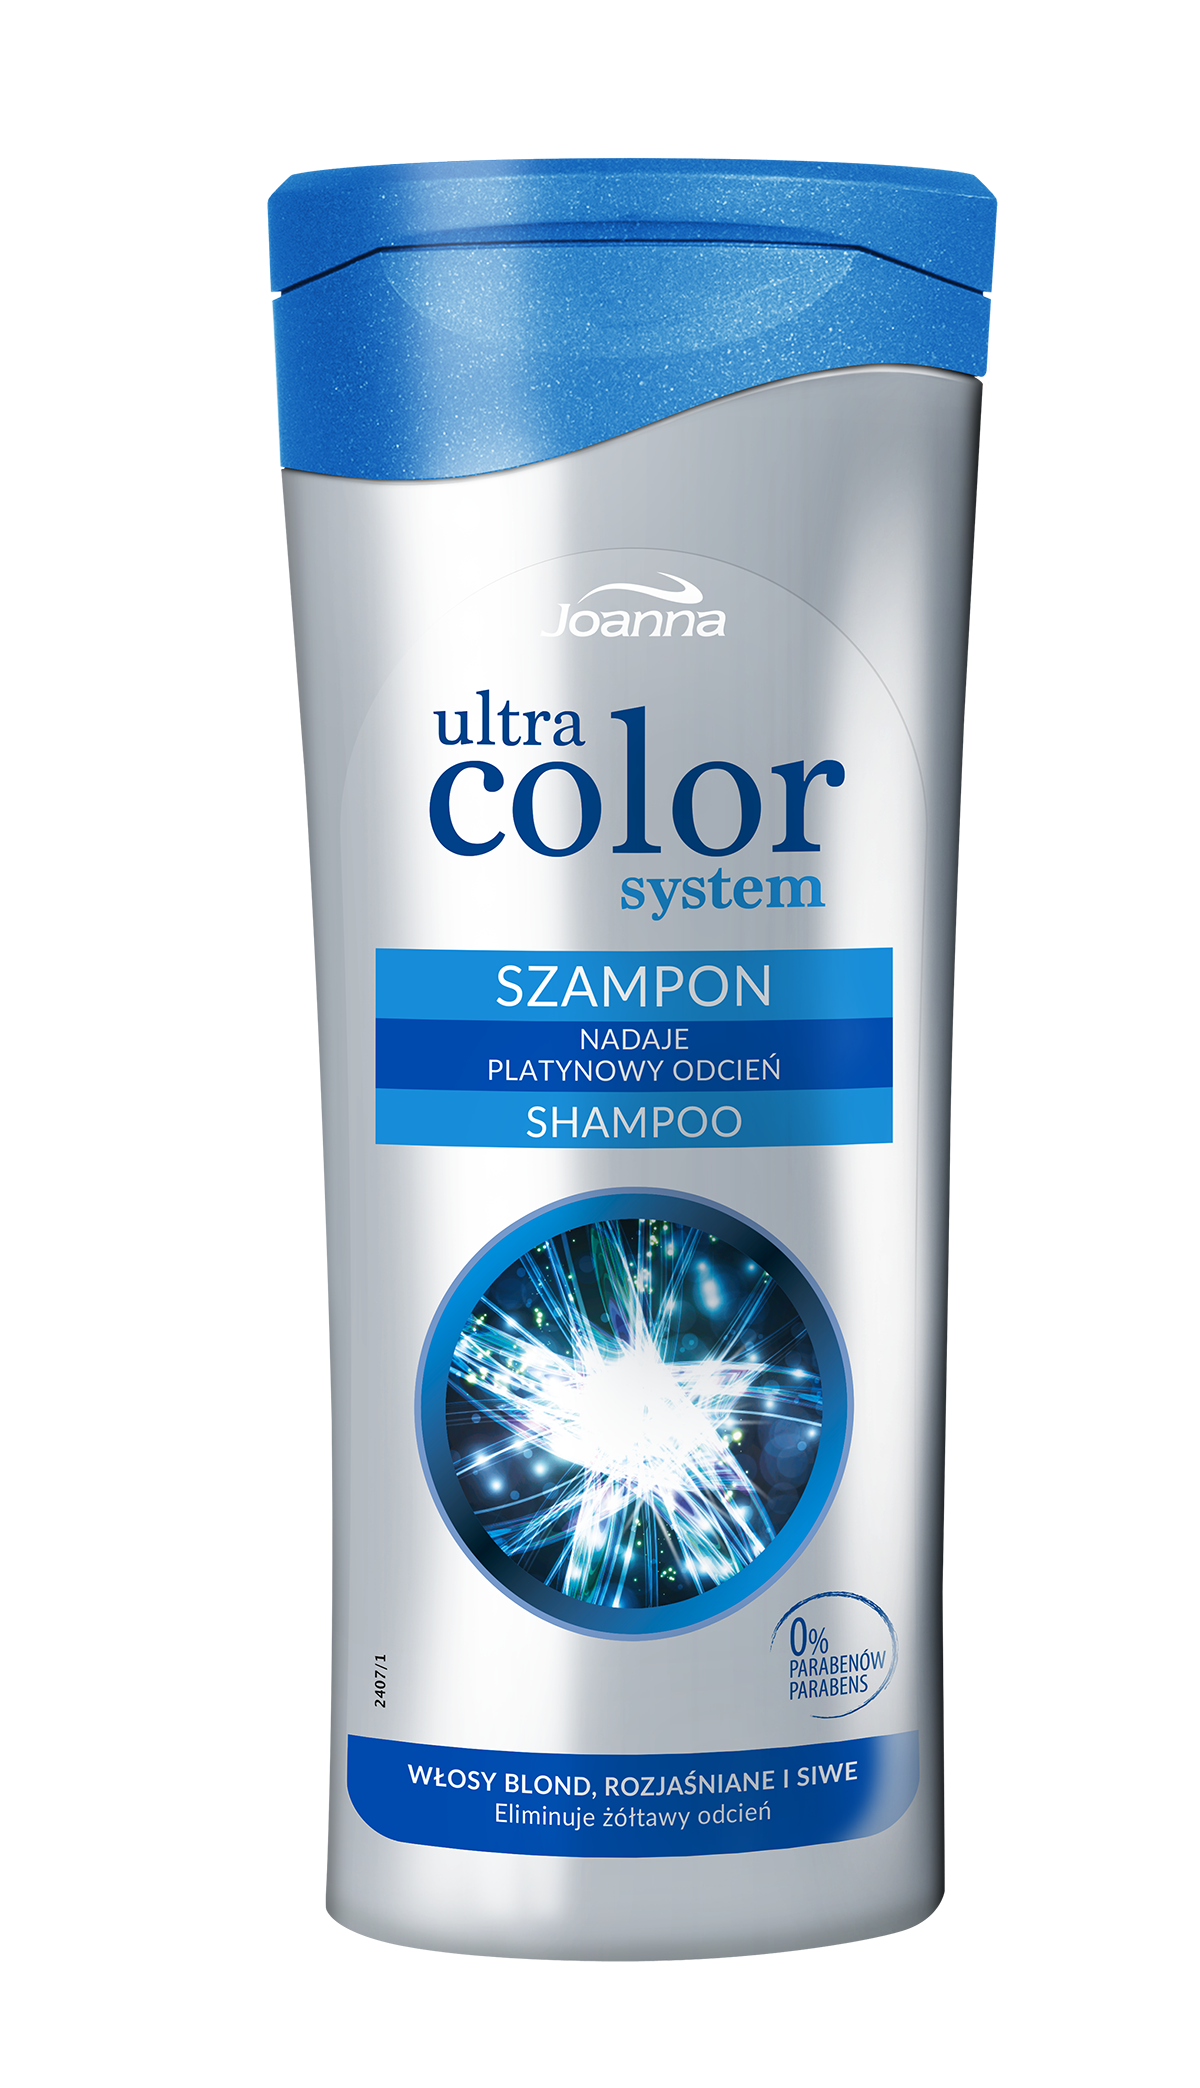 joanna szampon z niebieską nakrętką